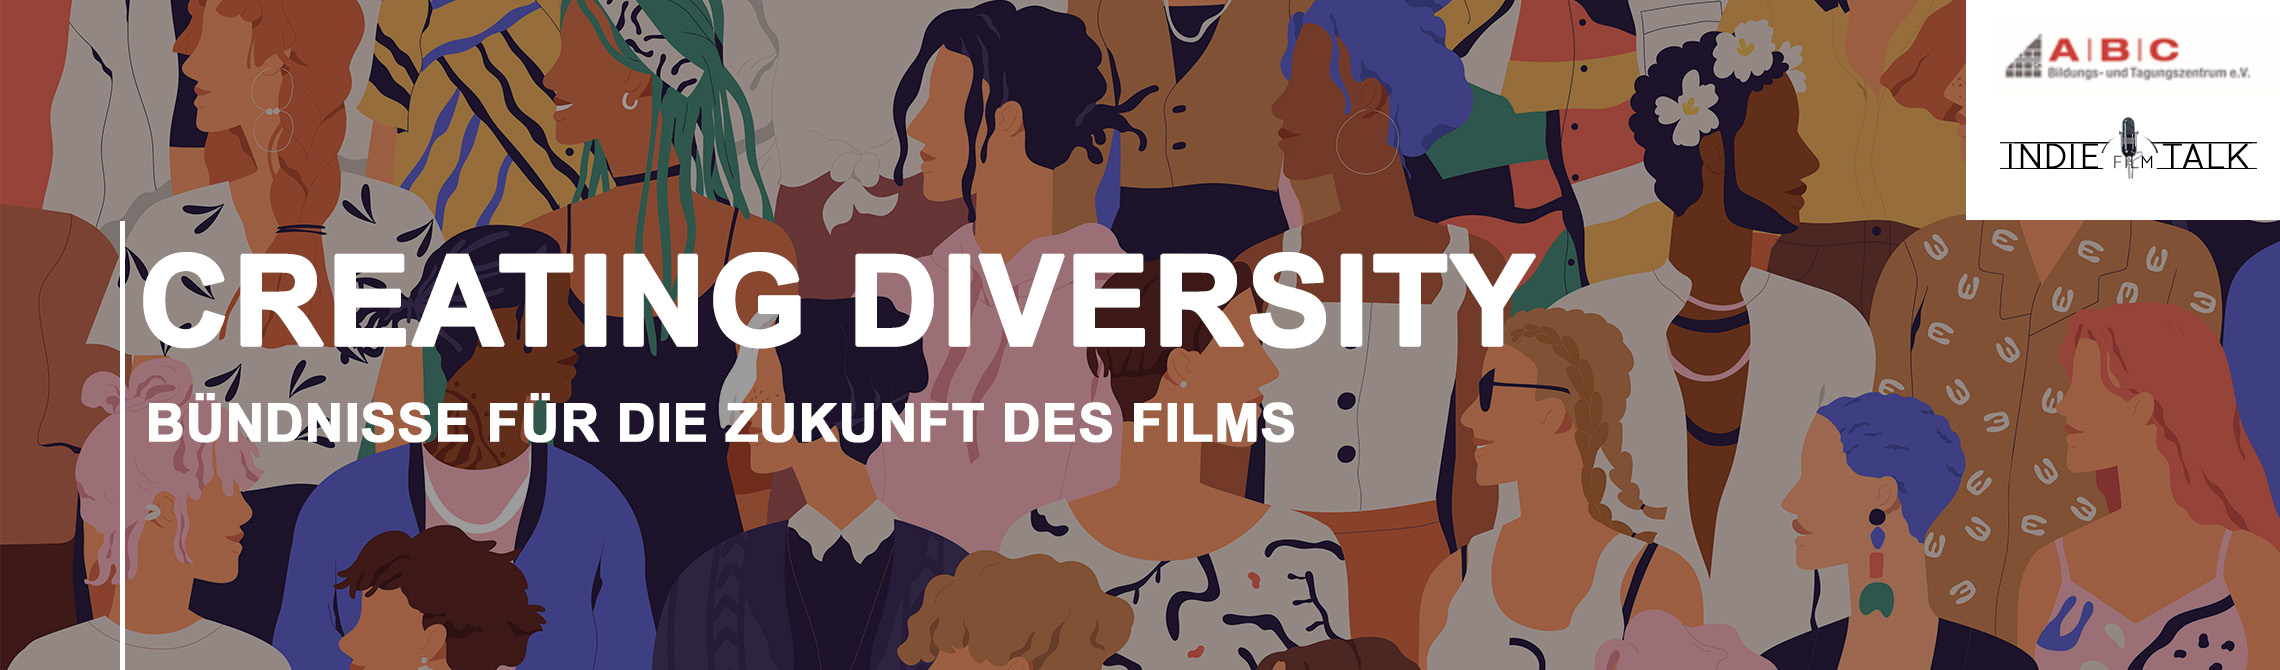 Barcamp: Creating Diversity - 
Bündnisse für die Zukunft des Films